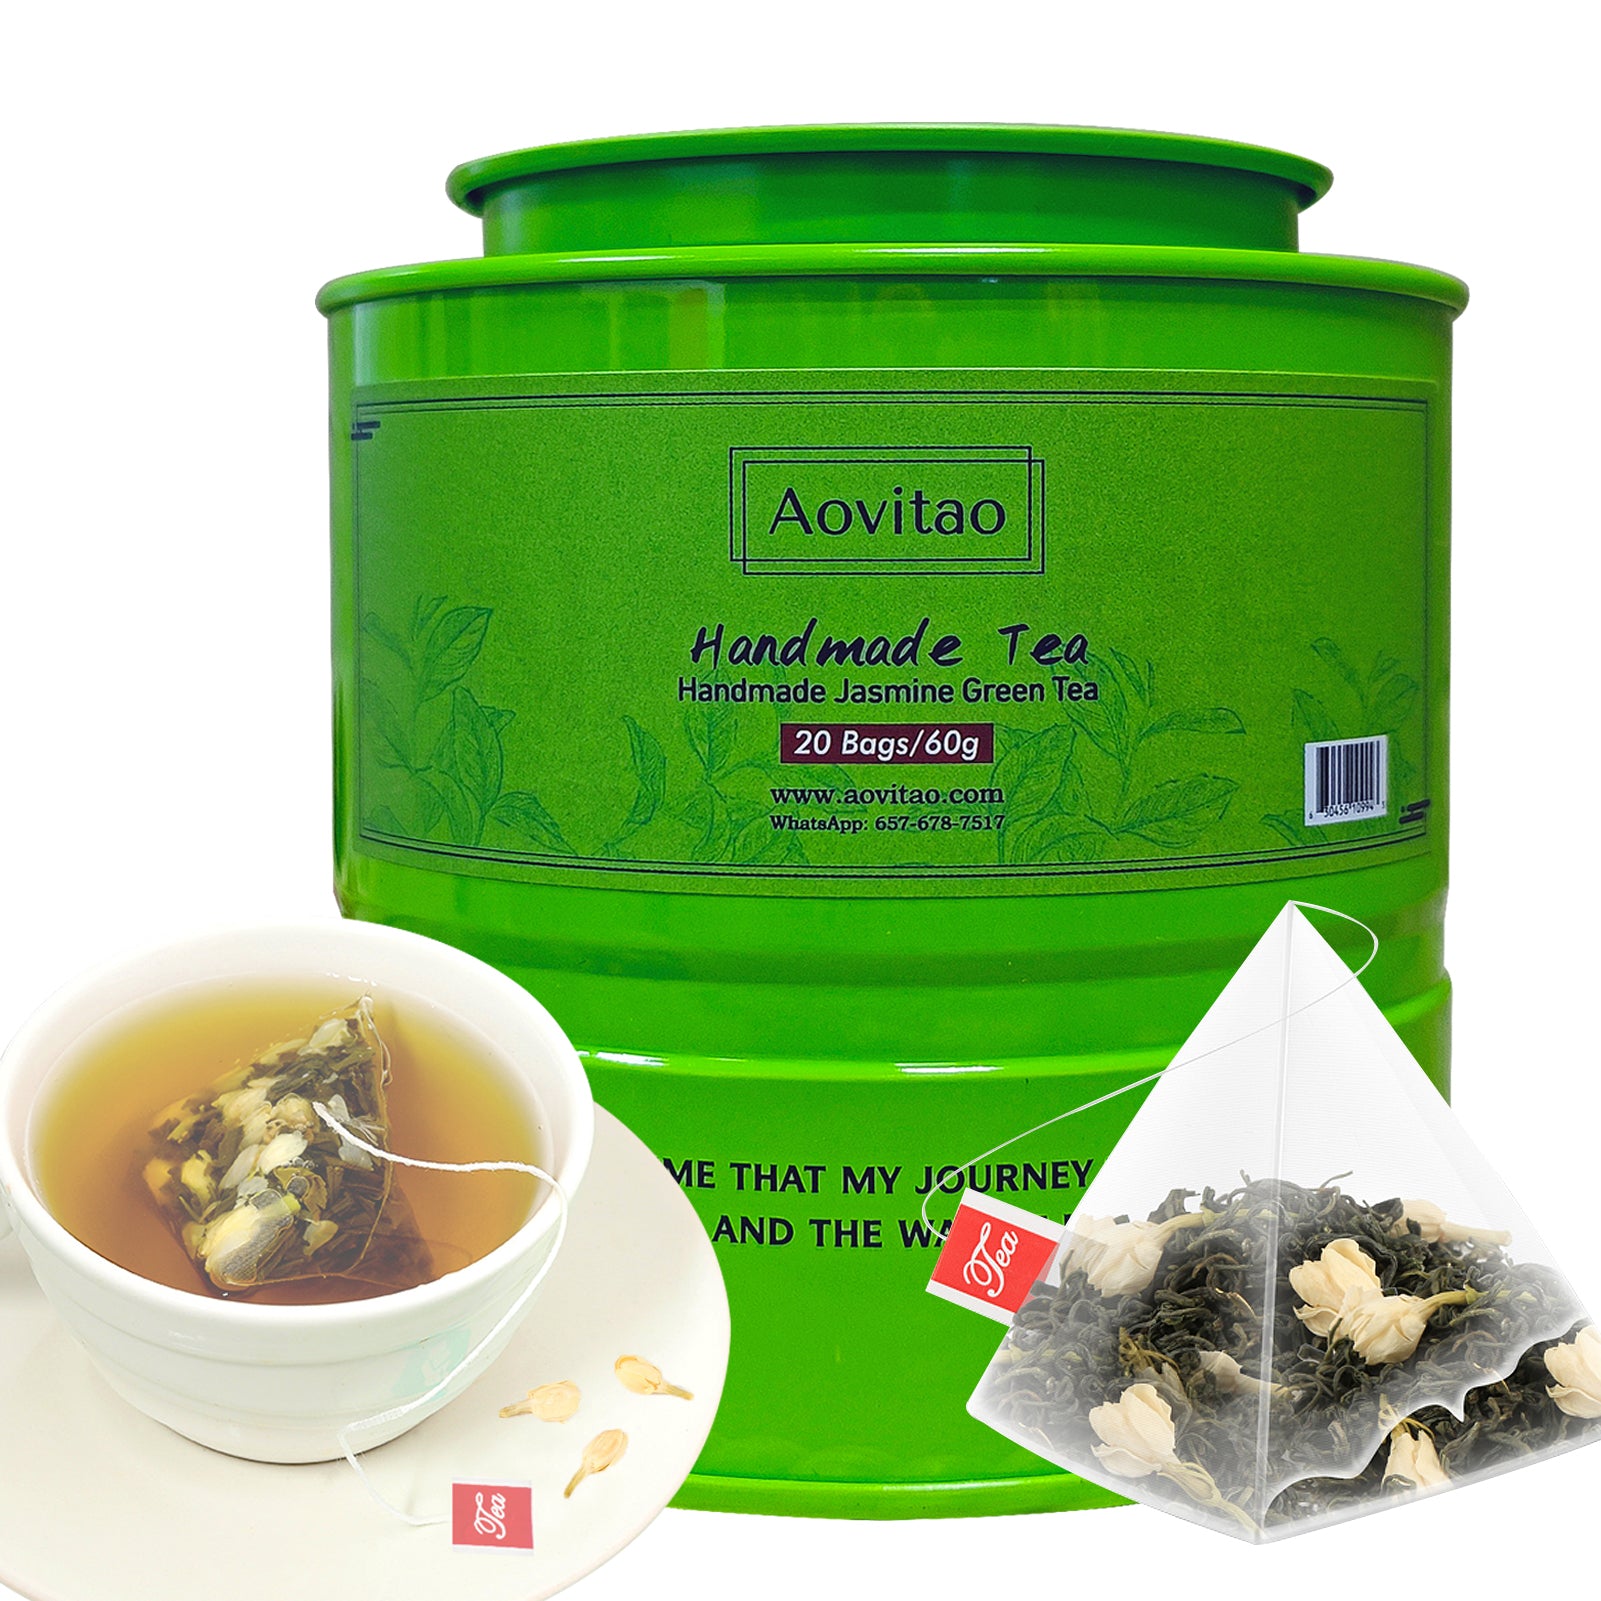 Handmade Jasmine Green Tea Loose Leaf Tea  Caffeinated Tea Fragrant Floral Scent,,20 bags/60g,Jasmine Flavor